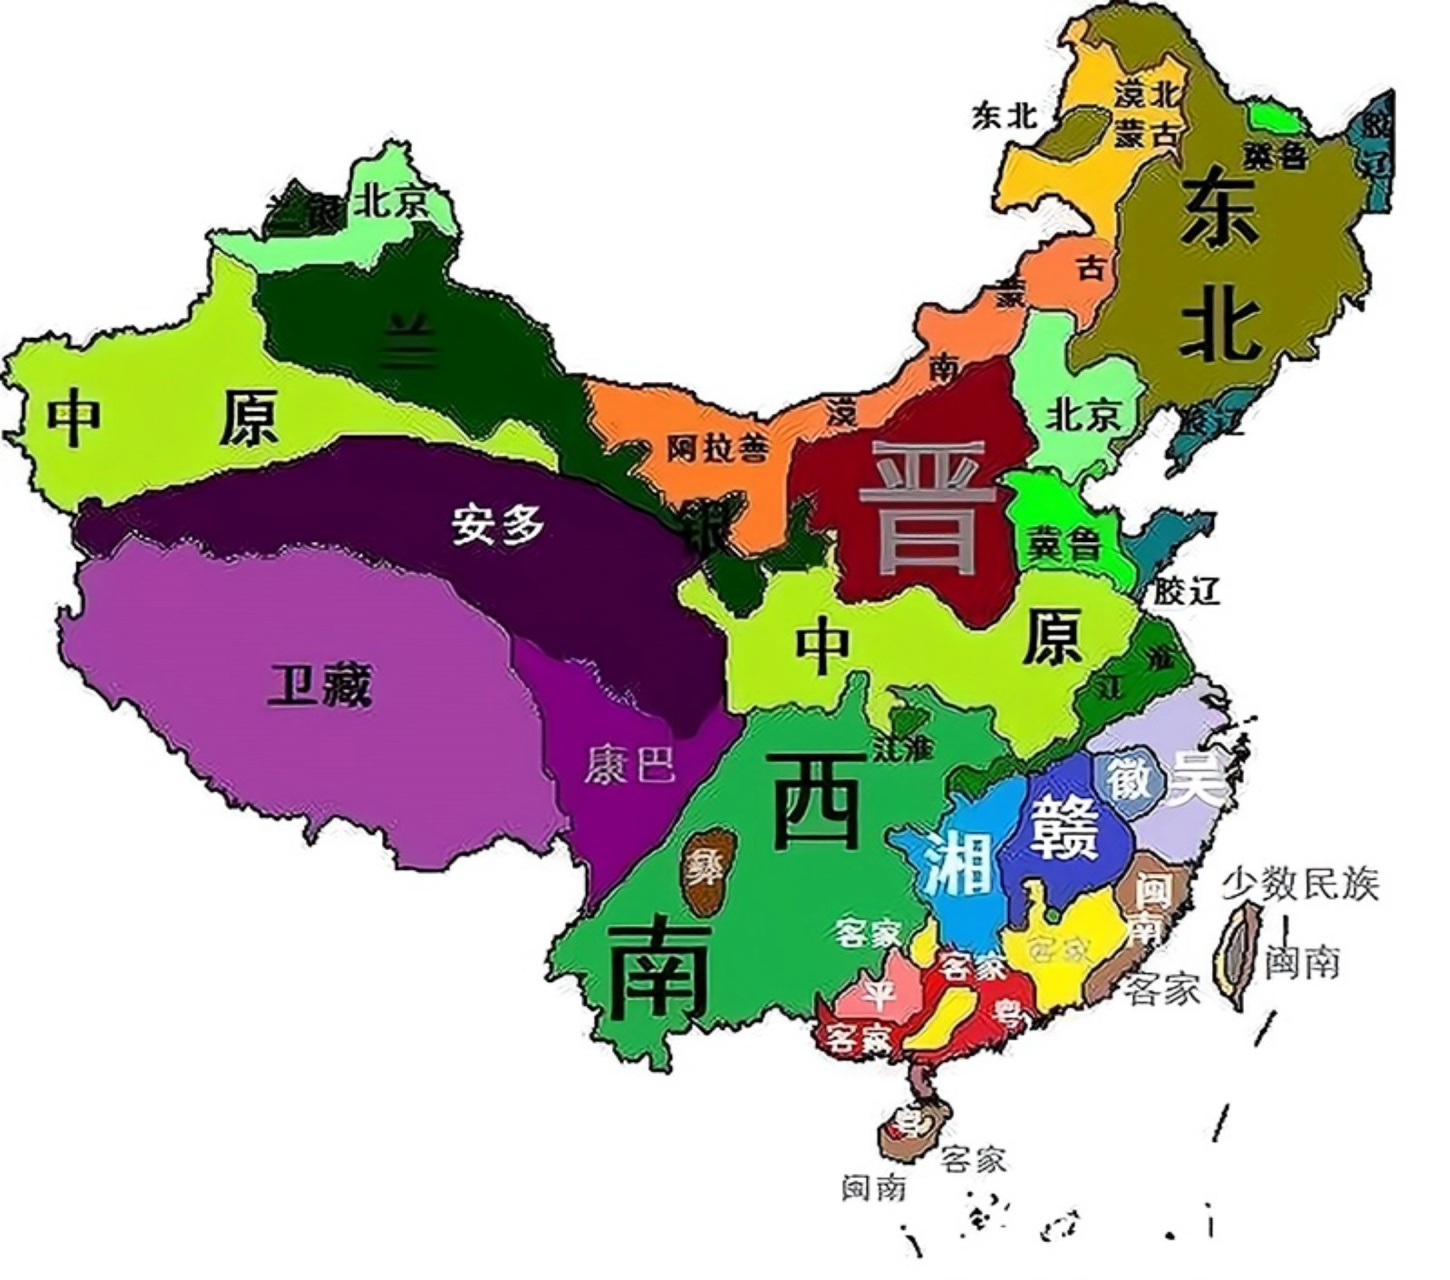 中国地区方言划分图(简略版)